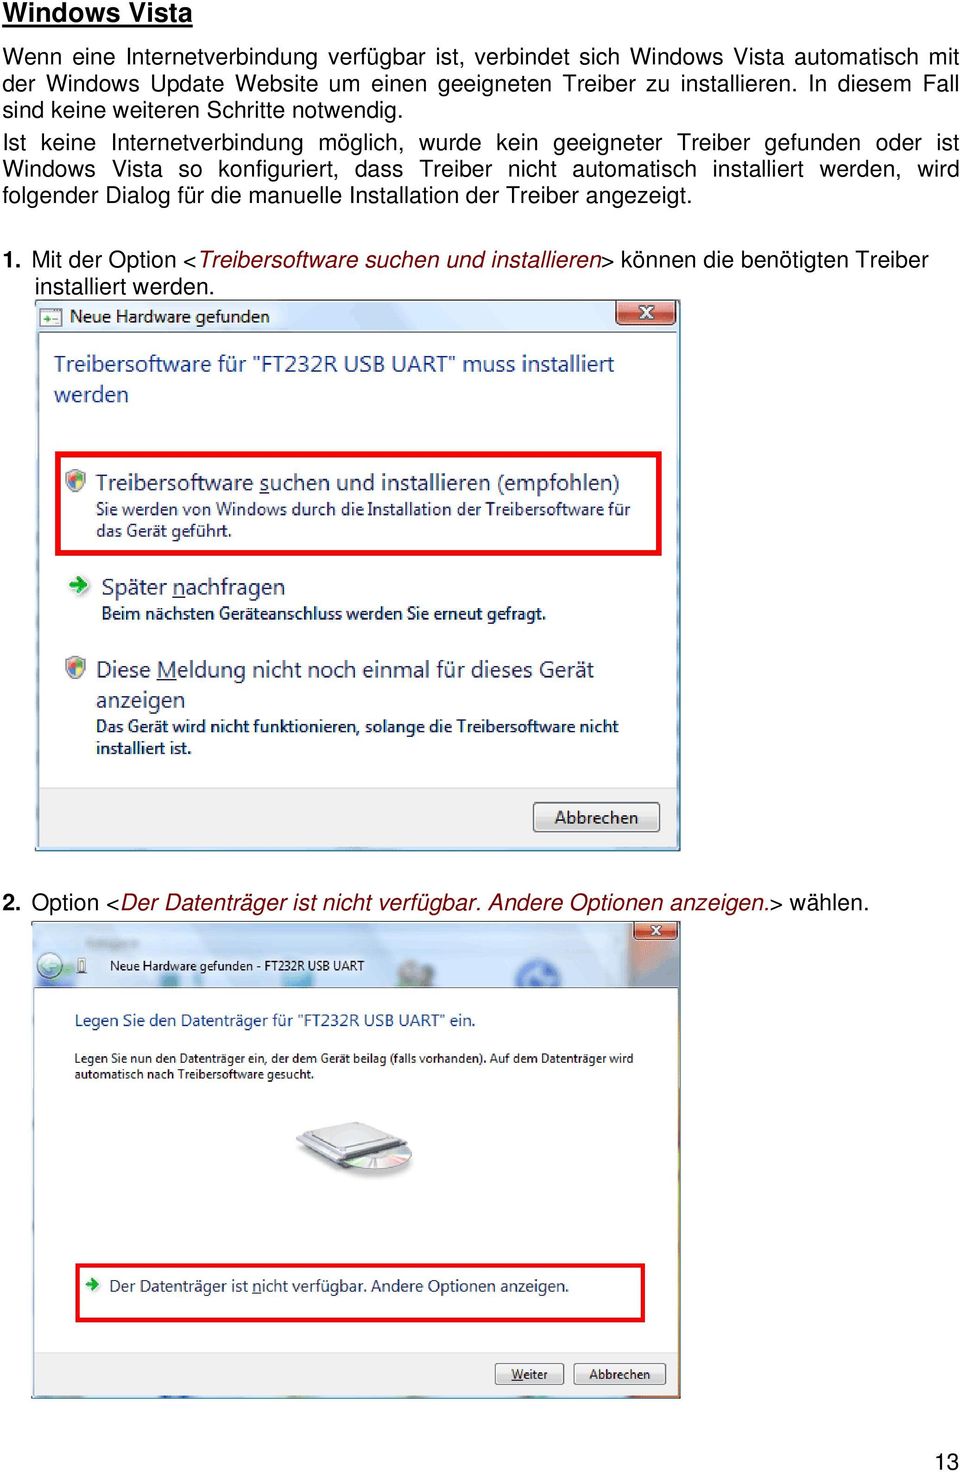 Ist keine Internetverbindung möglich, wurde kein geeigneter Treiber gefunden oder ist Windows Vista so konfiguriert, dass Treiber nicht automatisch installiert